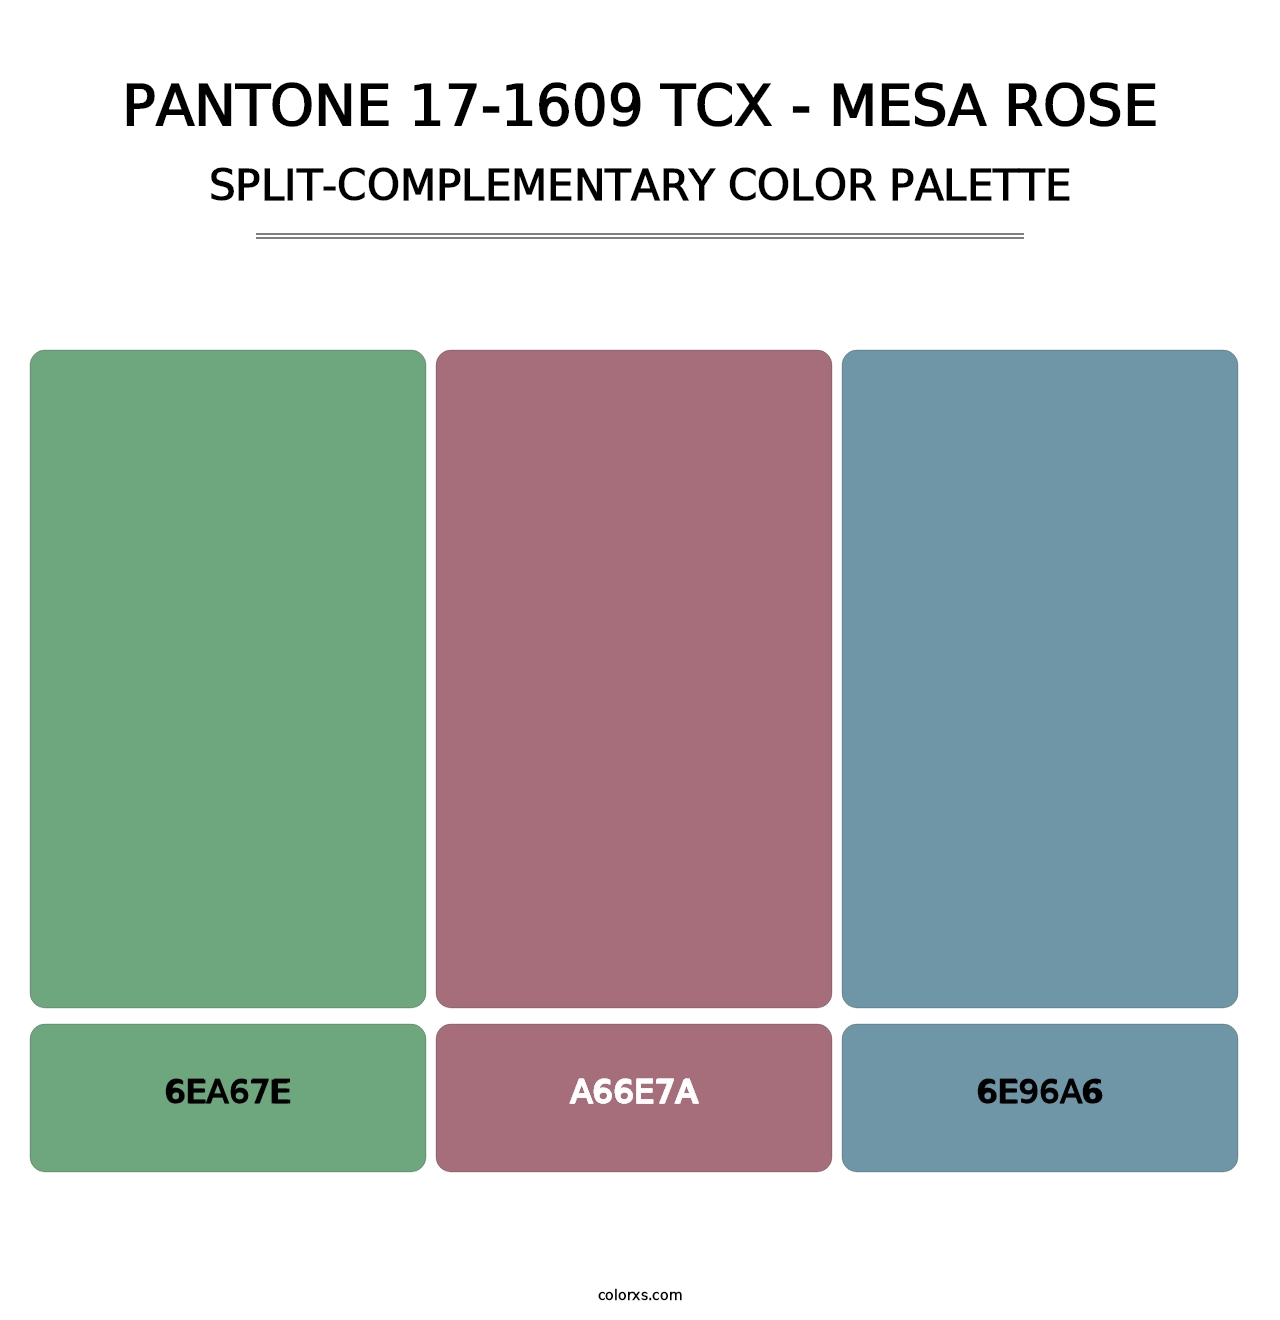 PANTONE 17-1609 TCX - Mesa Rose - Split-Complementary Color Palette